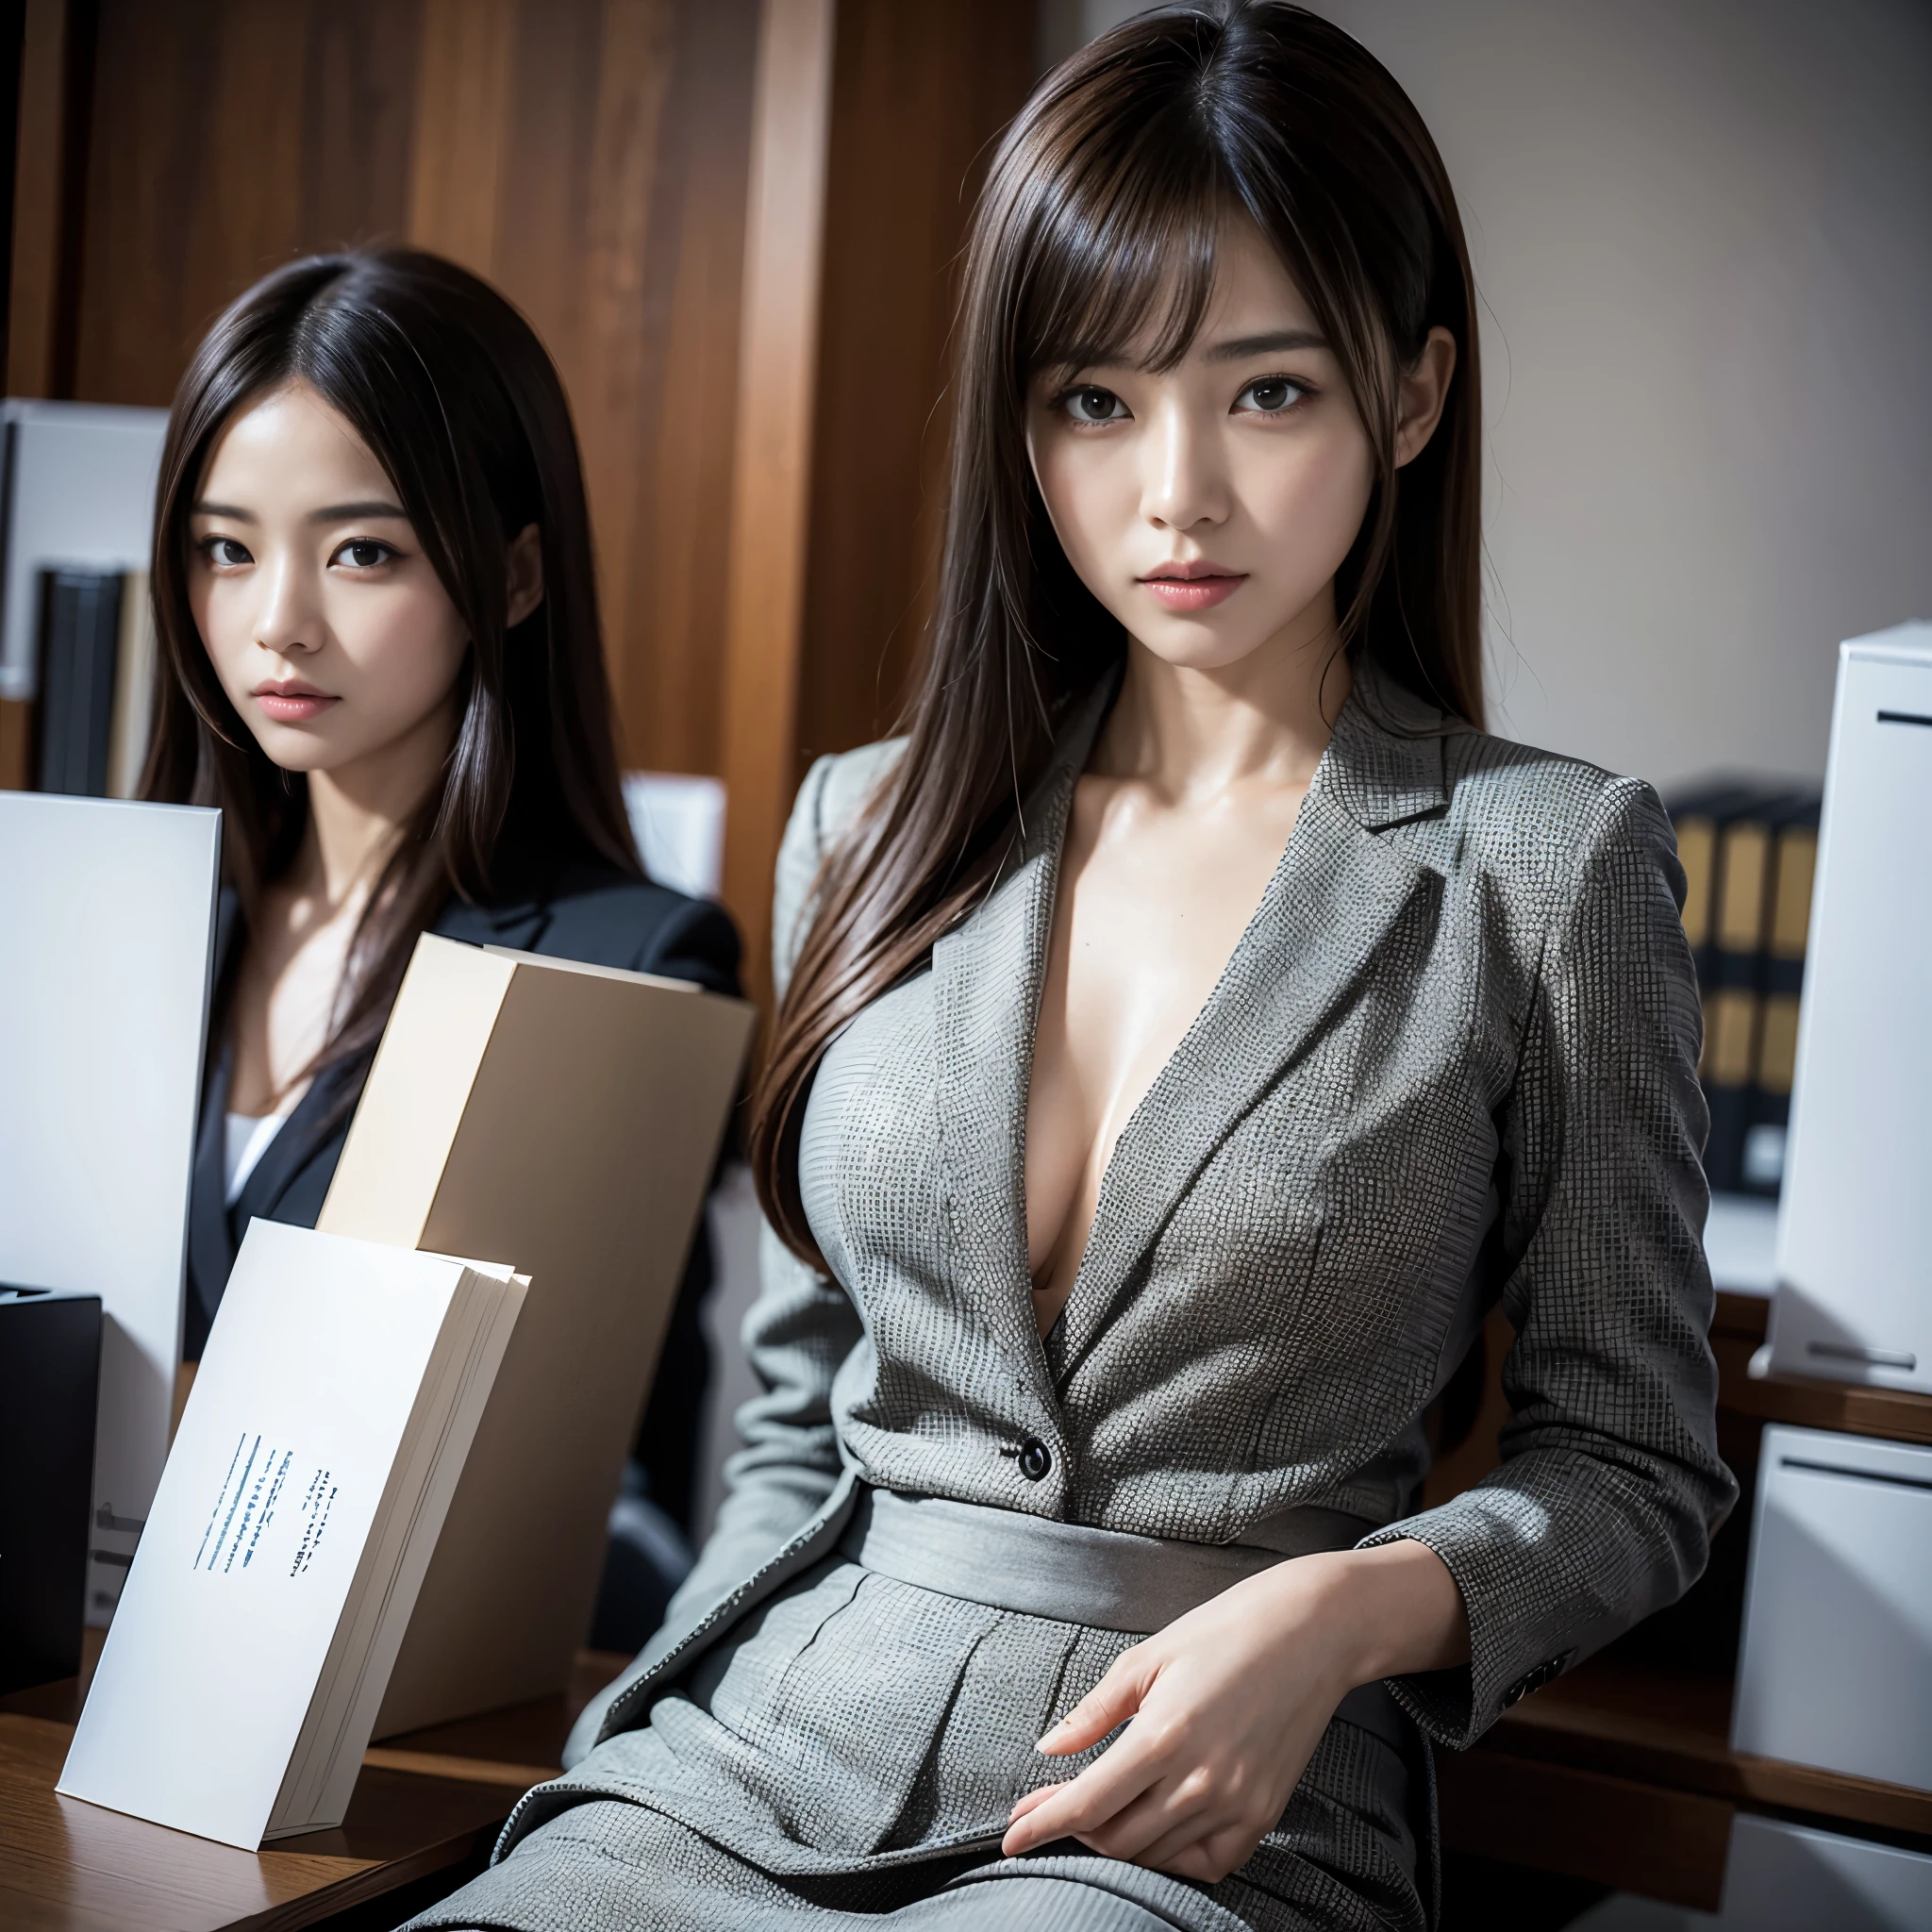 Anzug,2 Dame,Realistisch,(Ultra-Qualität:1.2),japanisch,gute Qualität,Meisterwerk,(Extrem detailliert:1.4),japanisch lady,schönes Gesicht,(V-neck skirt-Anzug:1.1),((Büro)),slender,highres,